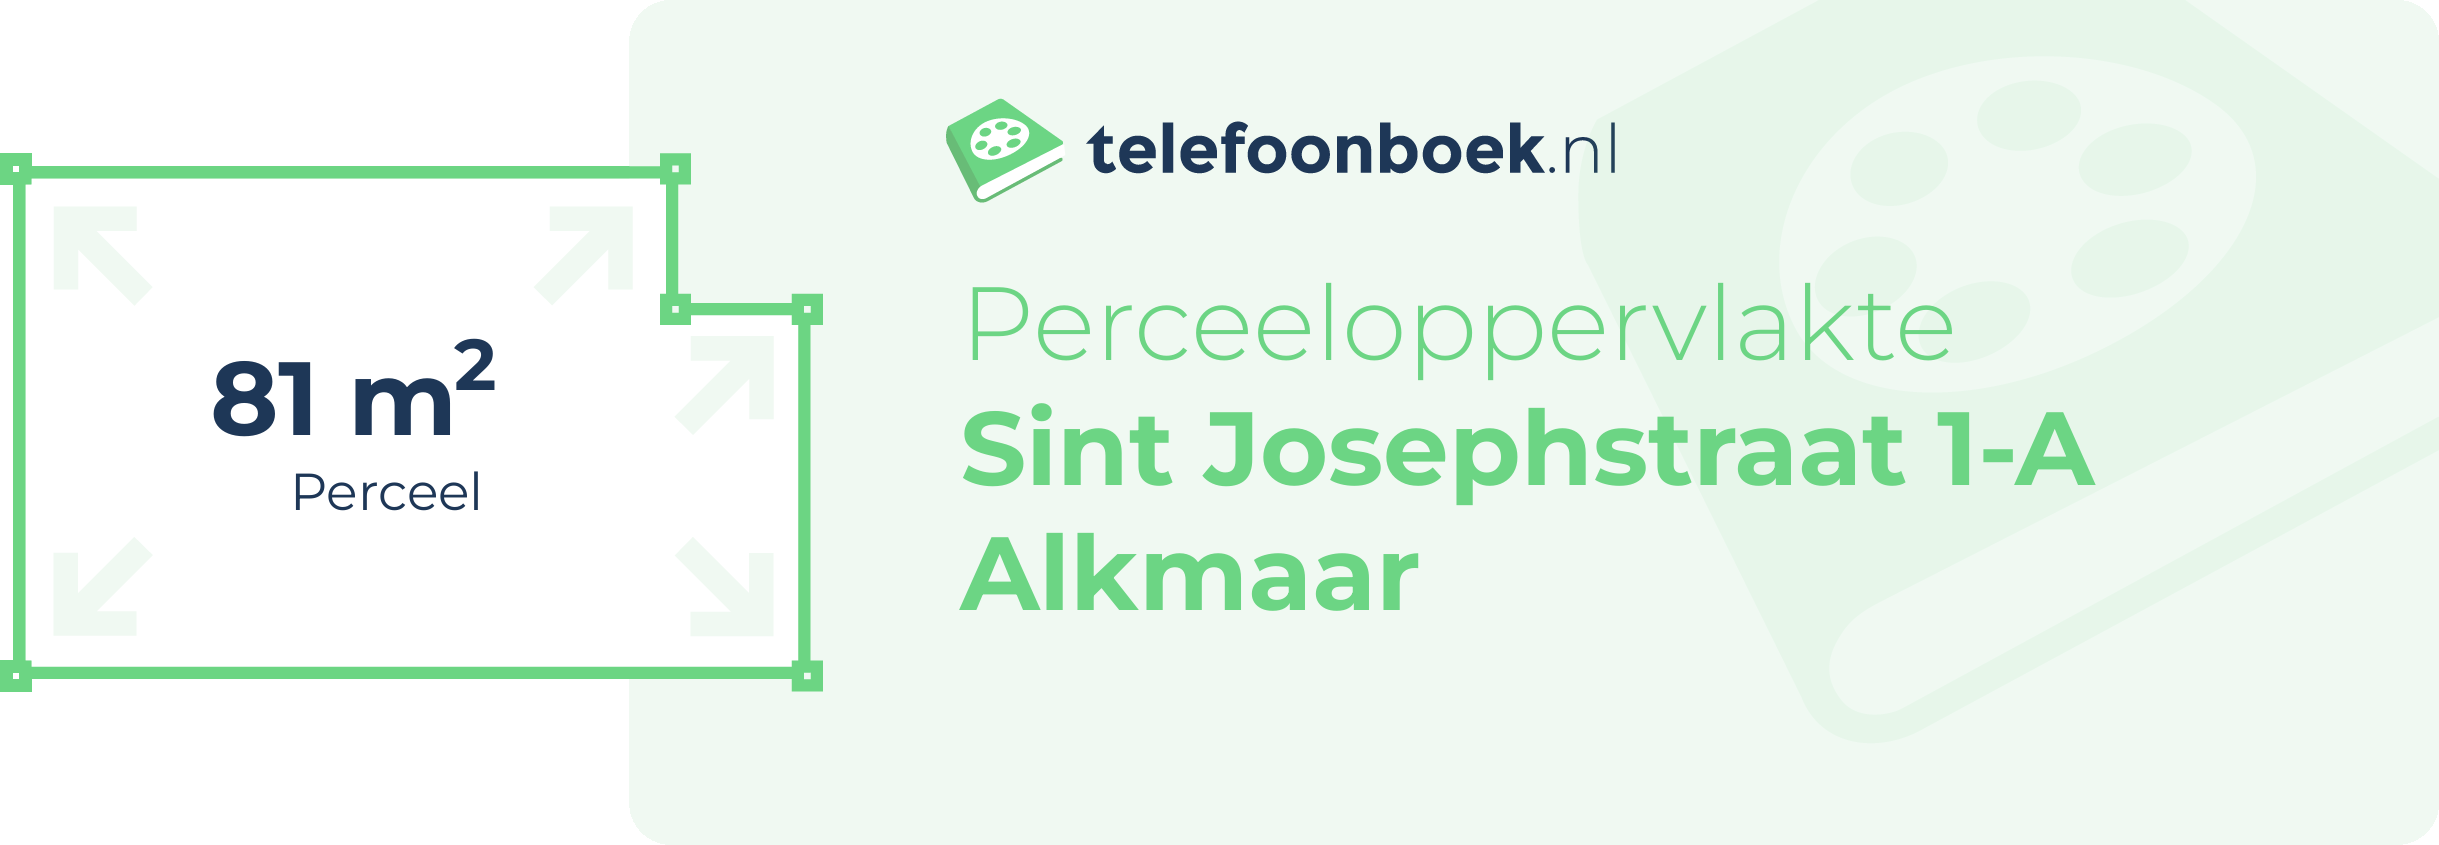 Perceeloppervlakte Sint Josephstraat 1-A Alkmaar